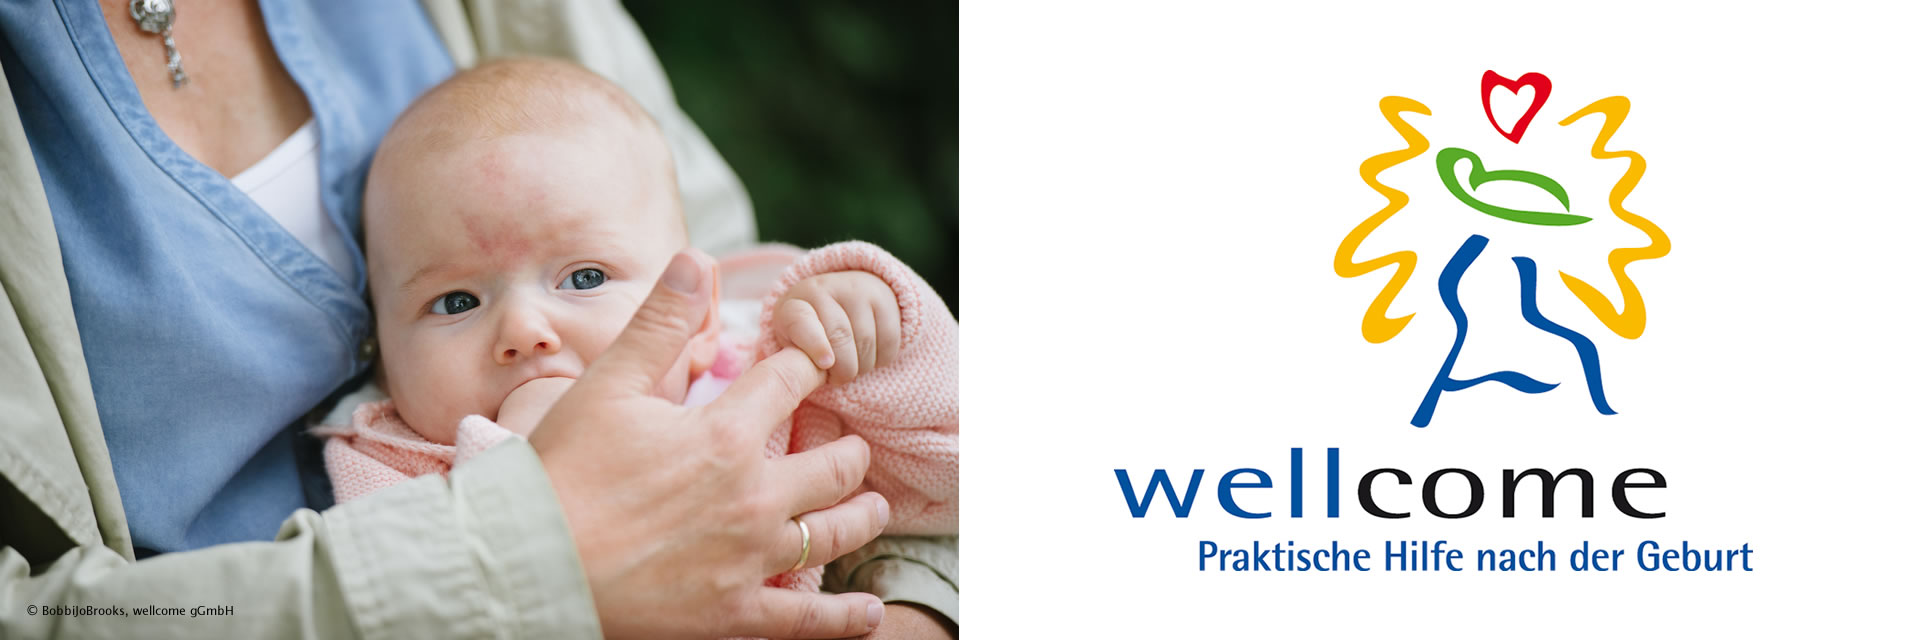 Foto Baby, Logo wellcome - Praktische Hilfe nach der Geburt